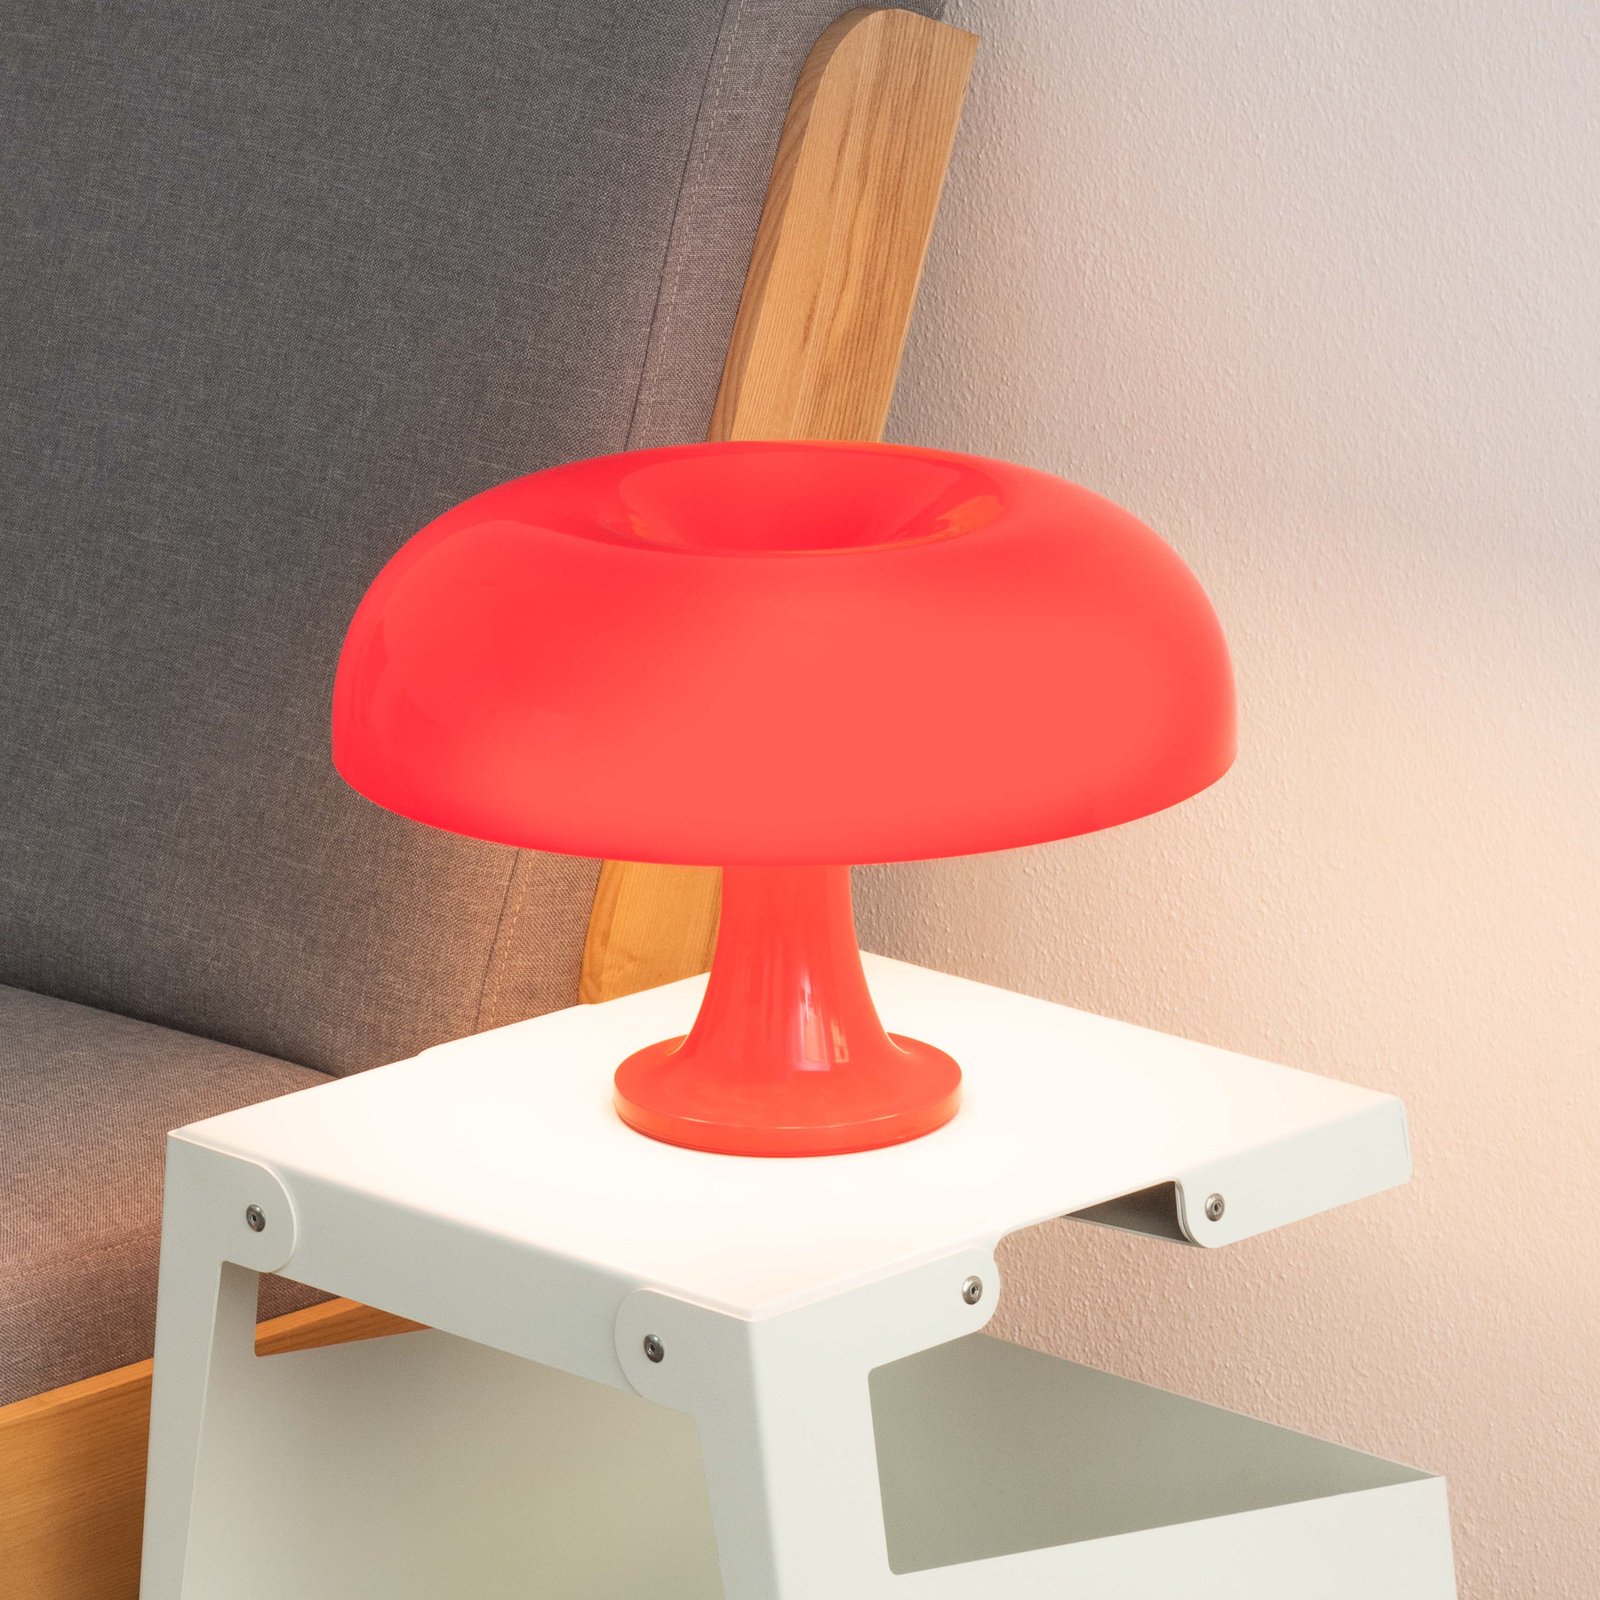 Artemide Nessino - designer table lamp, red